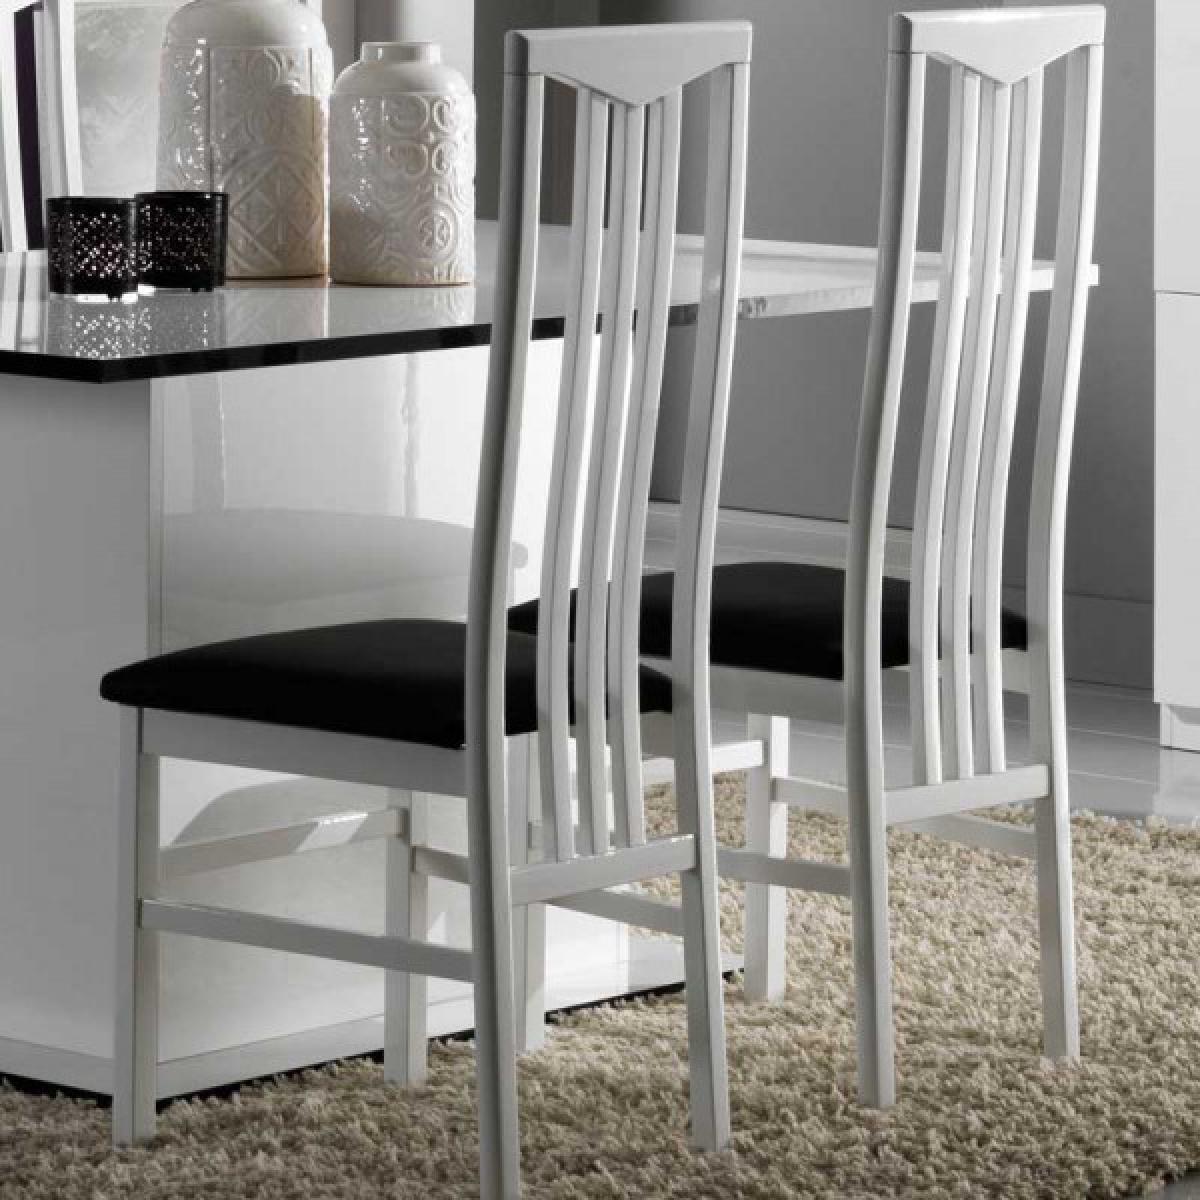 Dansmamaison - Duo de chaises Laque Blanc - ZEME - L 46 x l 46 x H 108 cm - Chaises